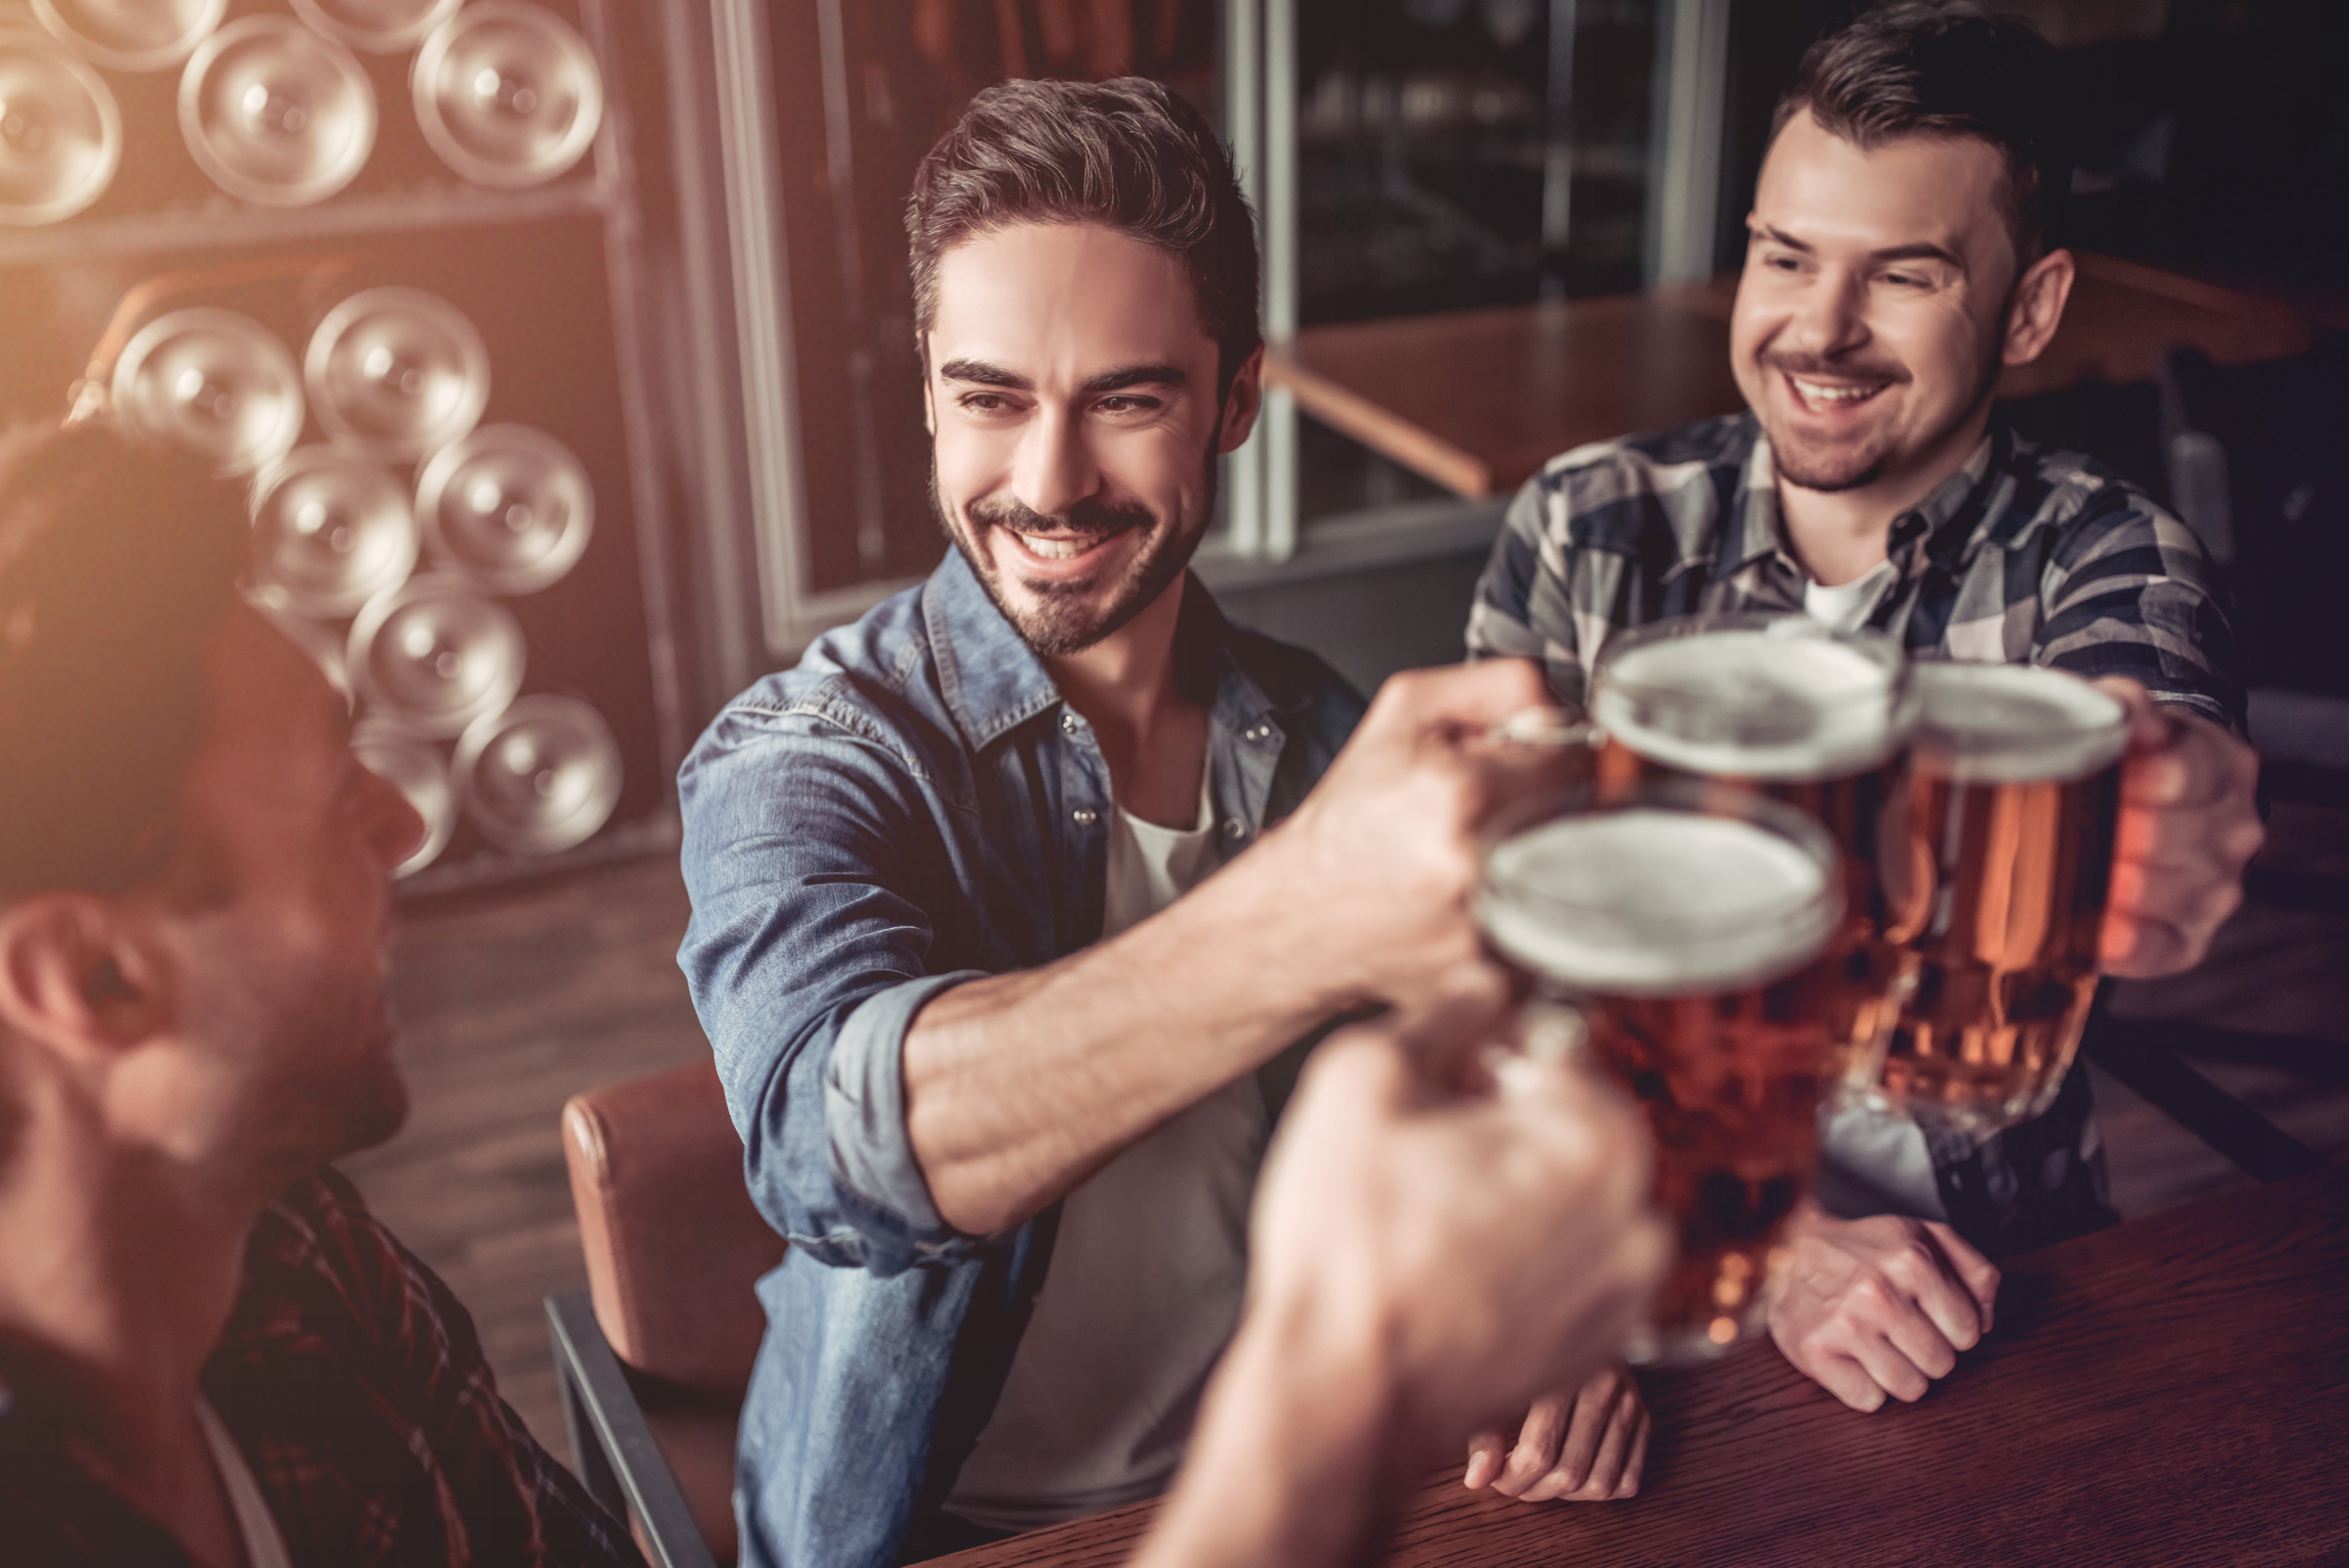 Опасность распития крепких алкогольных напитков с Близнецом заключается в том, что представители этого знака зодиака могут внезапно стать своей полной противоположностью. Фото © Shutterstock